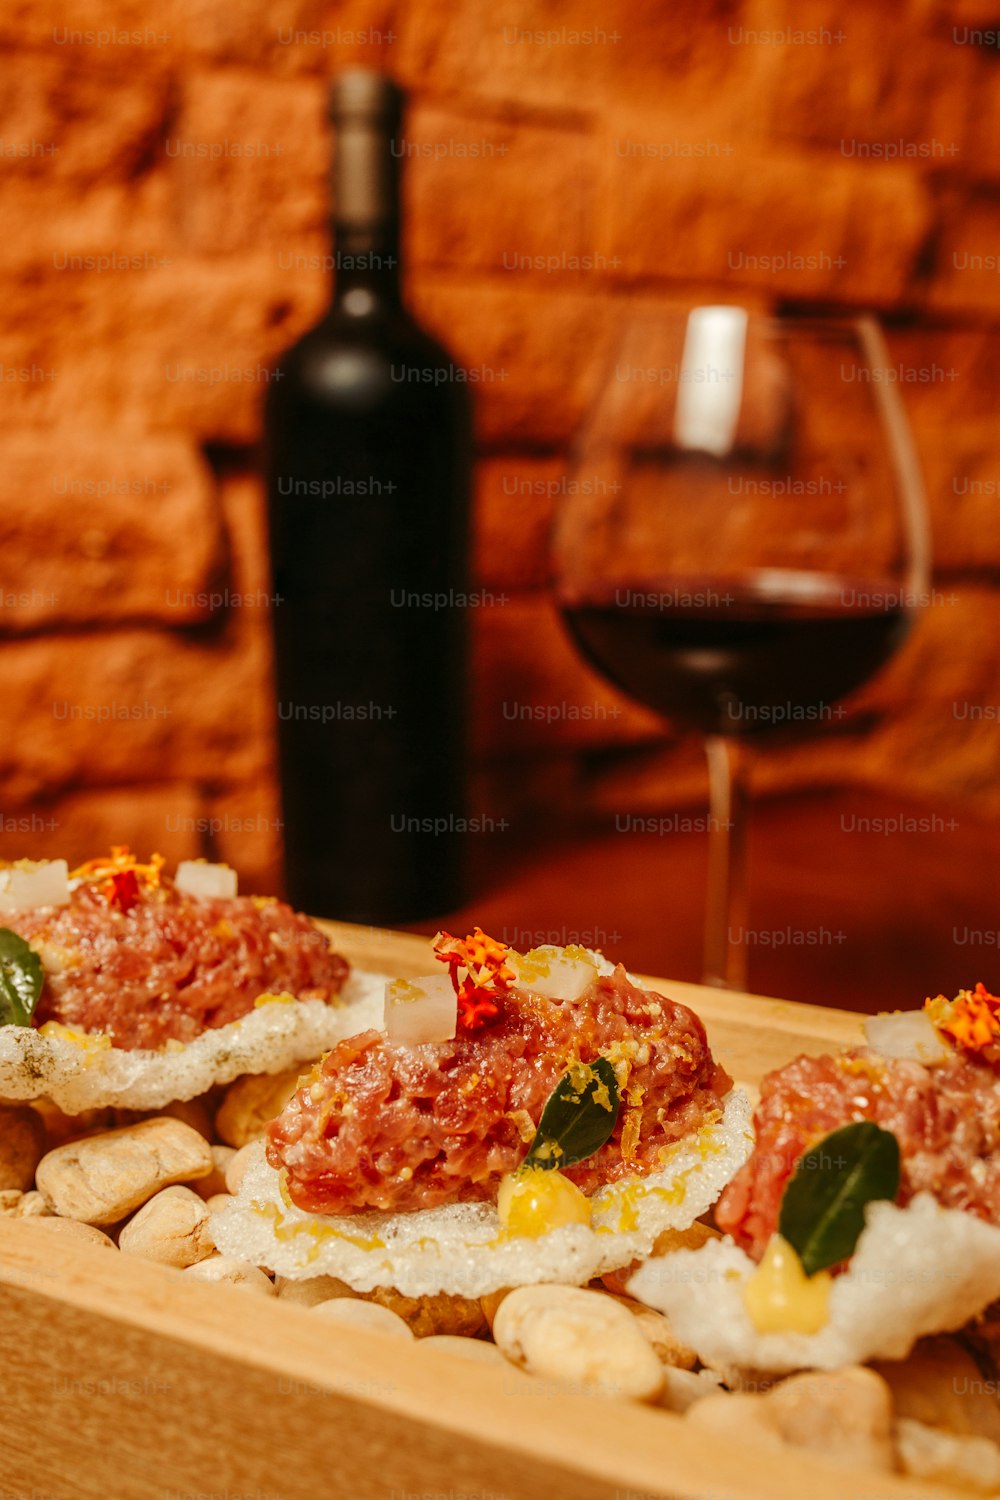 eine Holzkiste gefüllt mit Essen neben einem Glas Wein